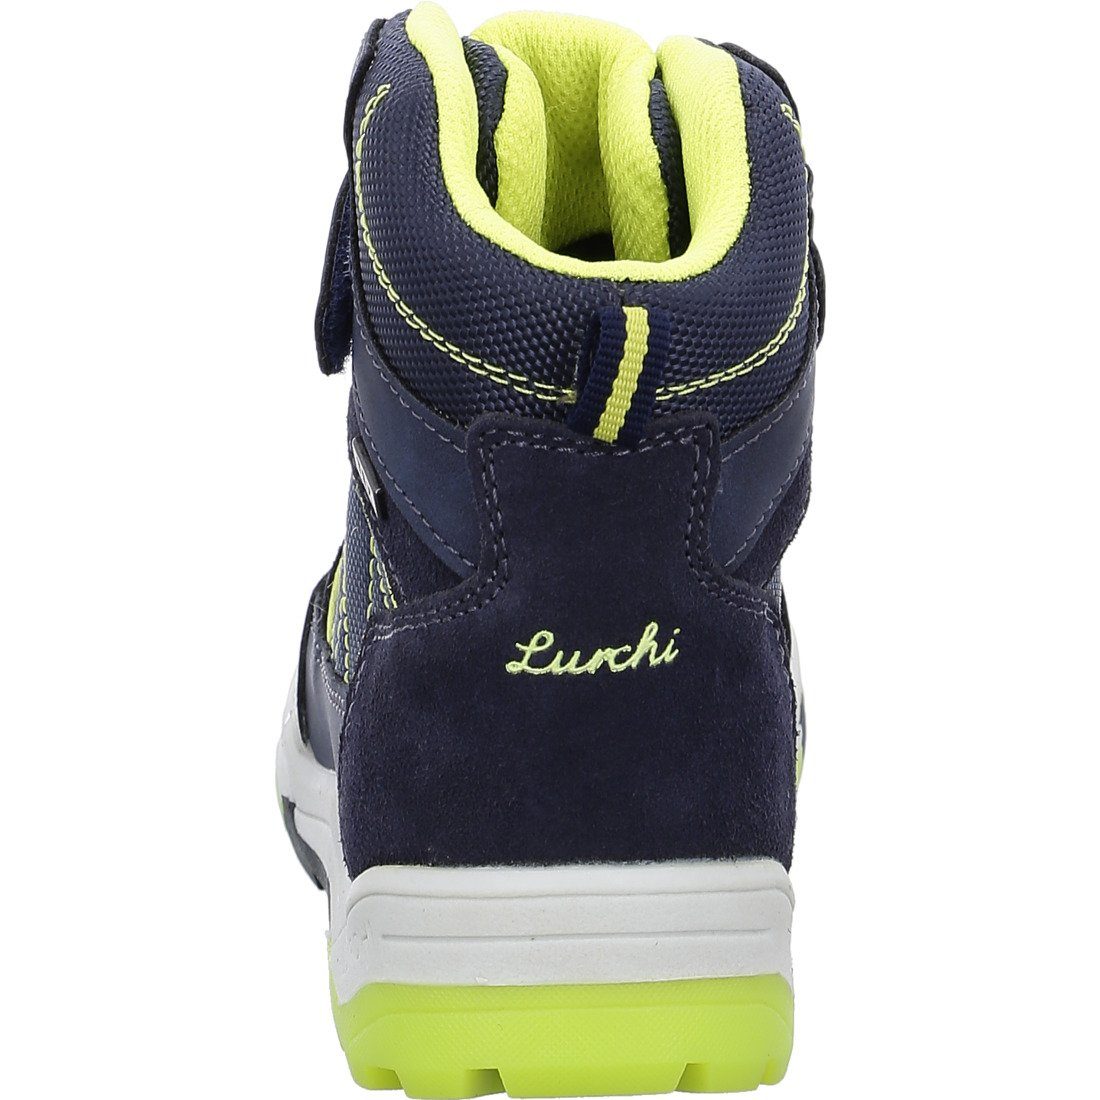 Lurchi Lurchi Schuhe, Stiefel Stiefel Materialmix - Talon-Tex